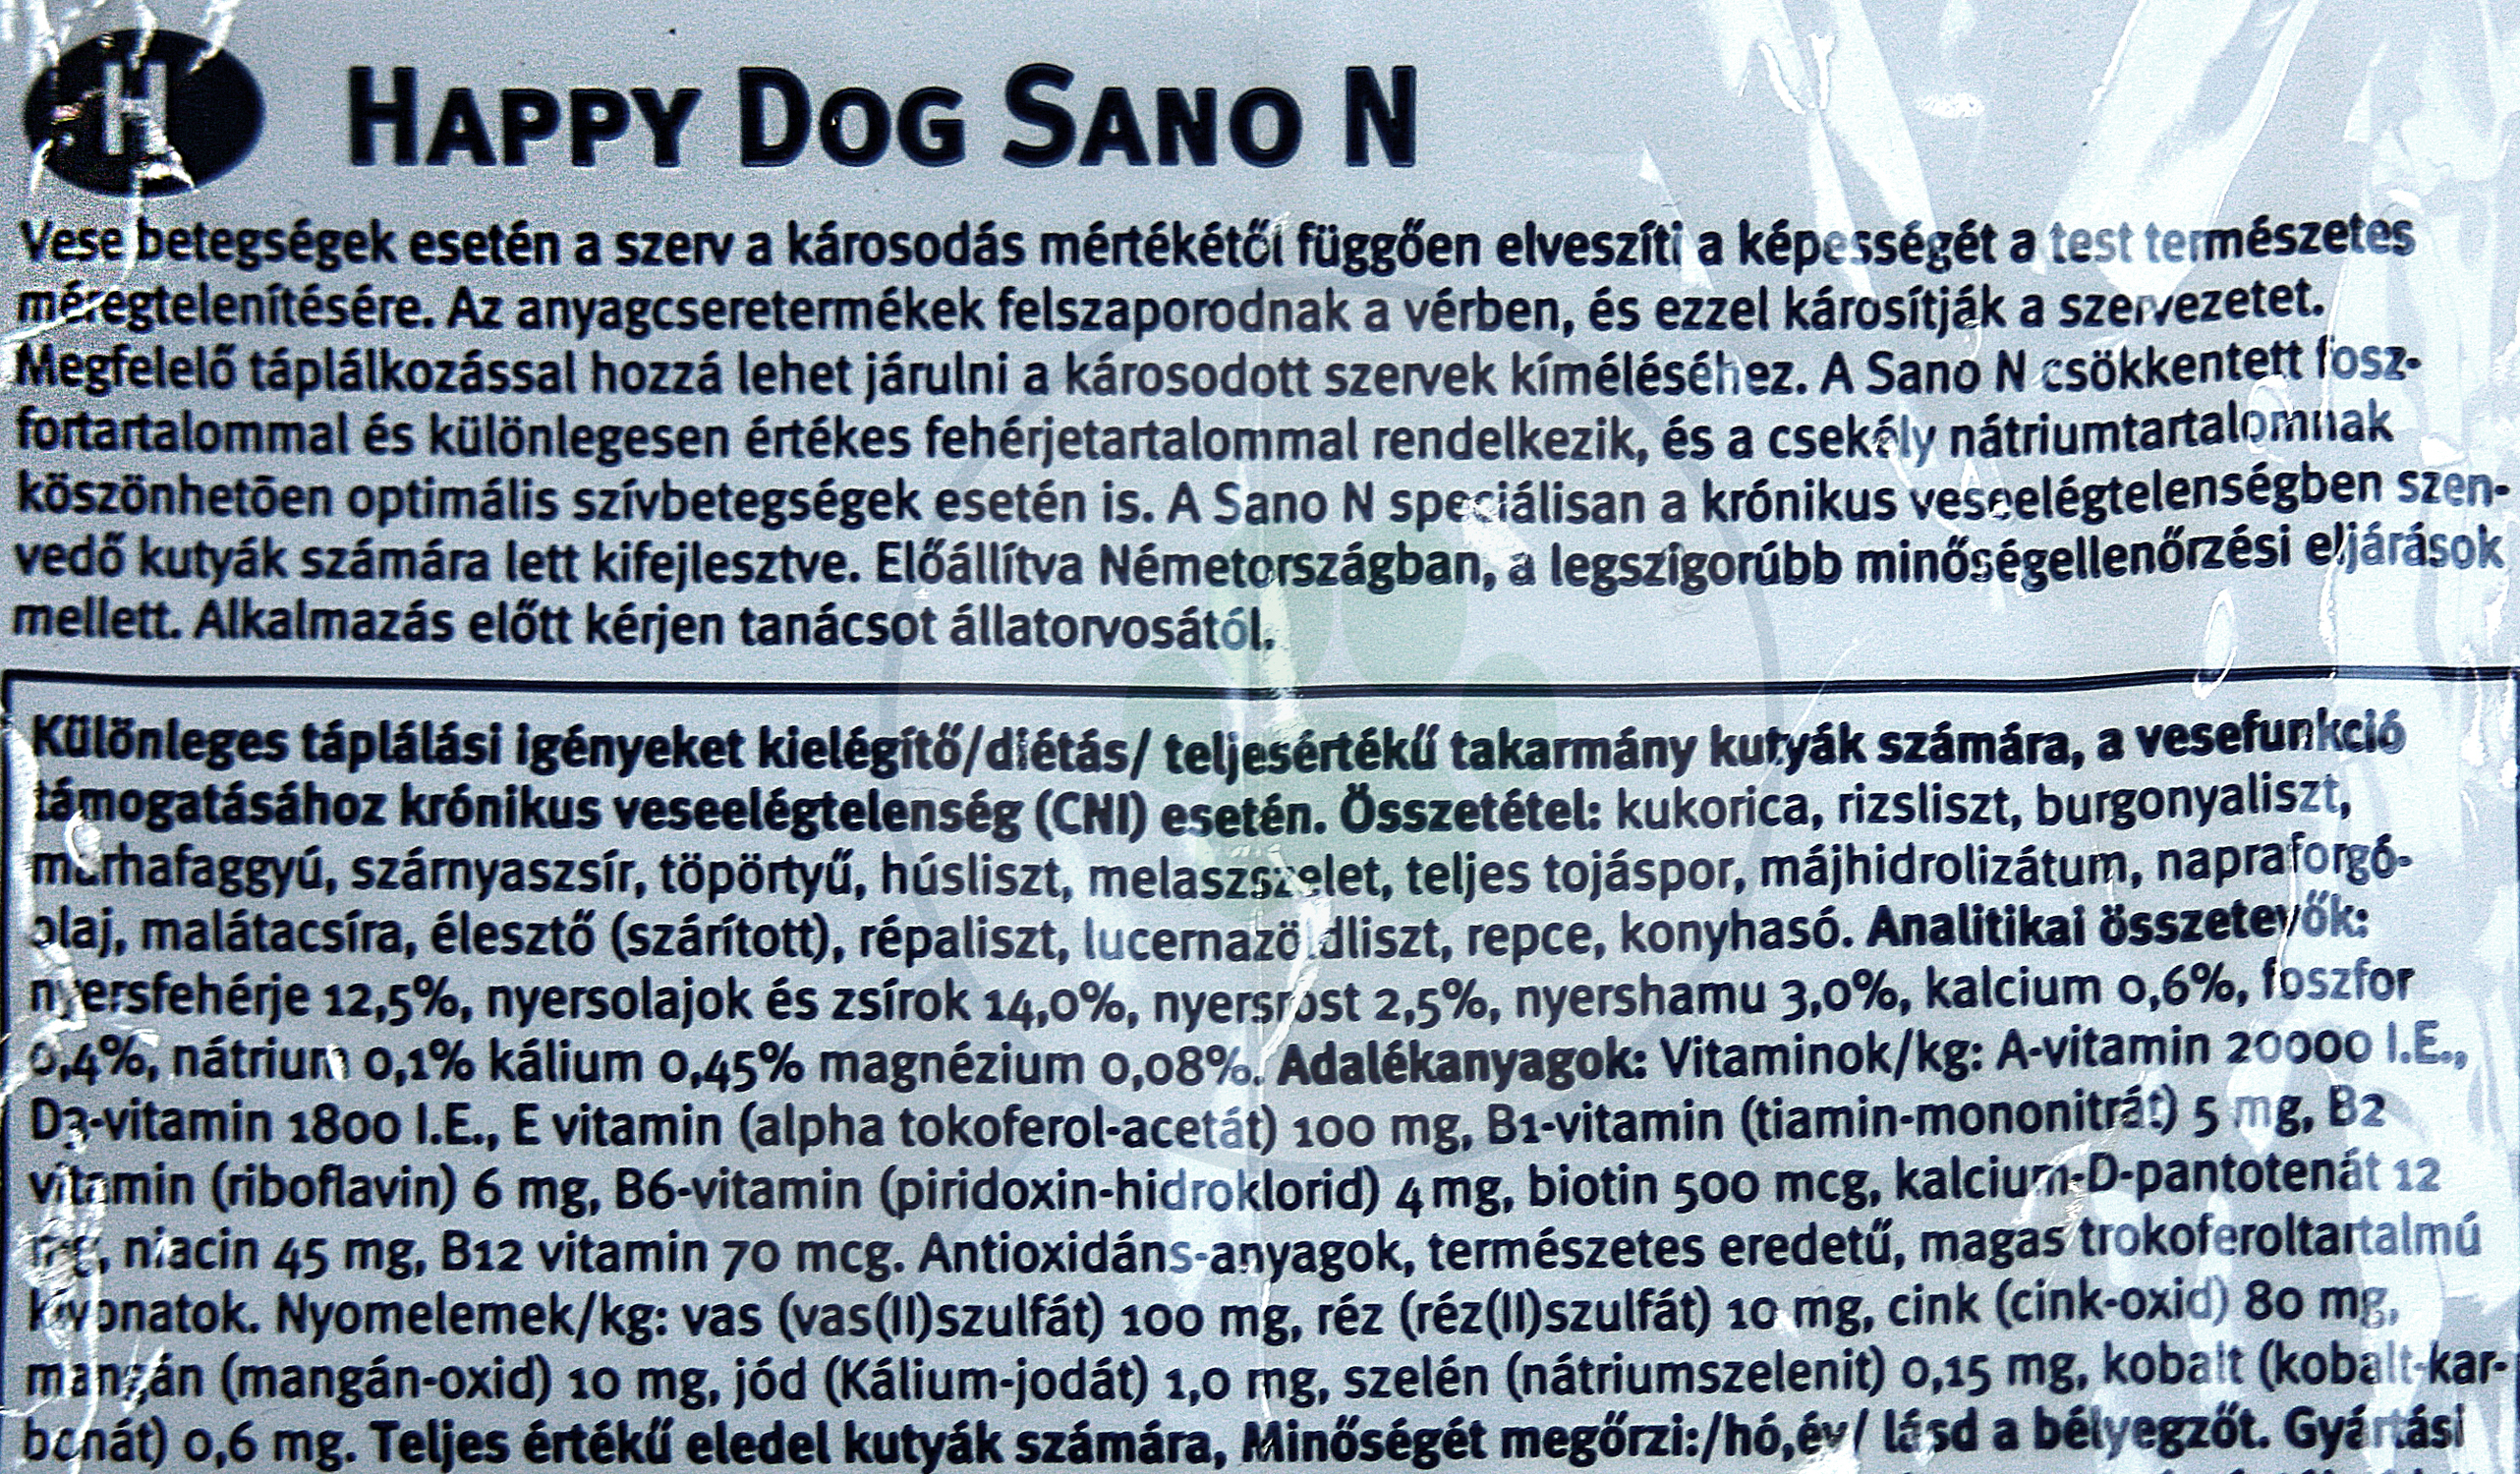 Happy Dog Supreme Sano N - zoom